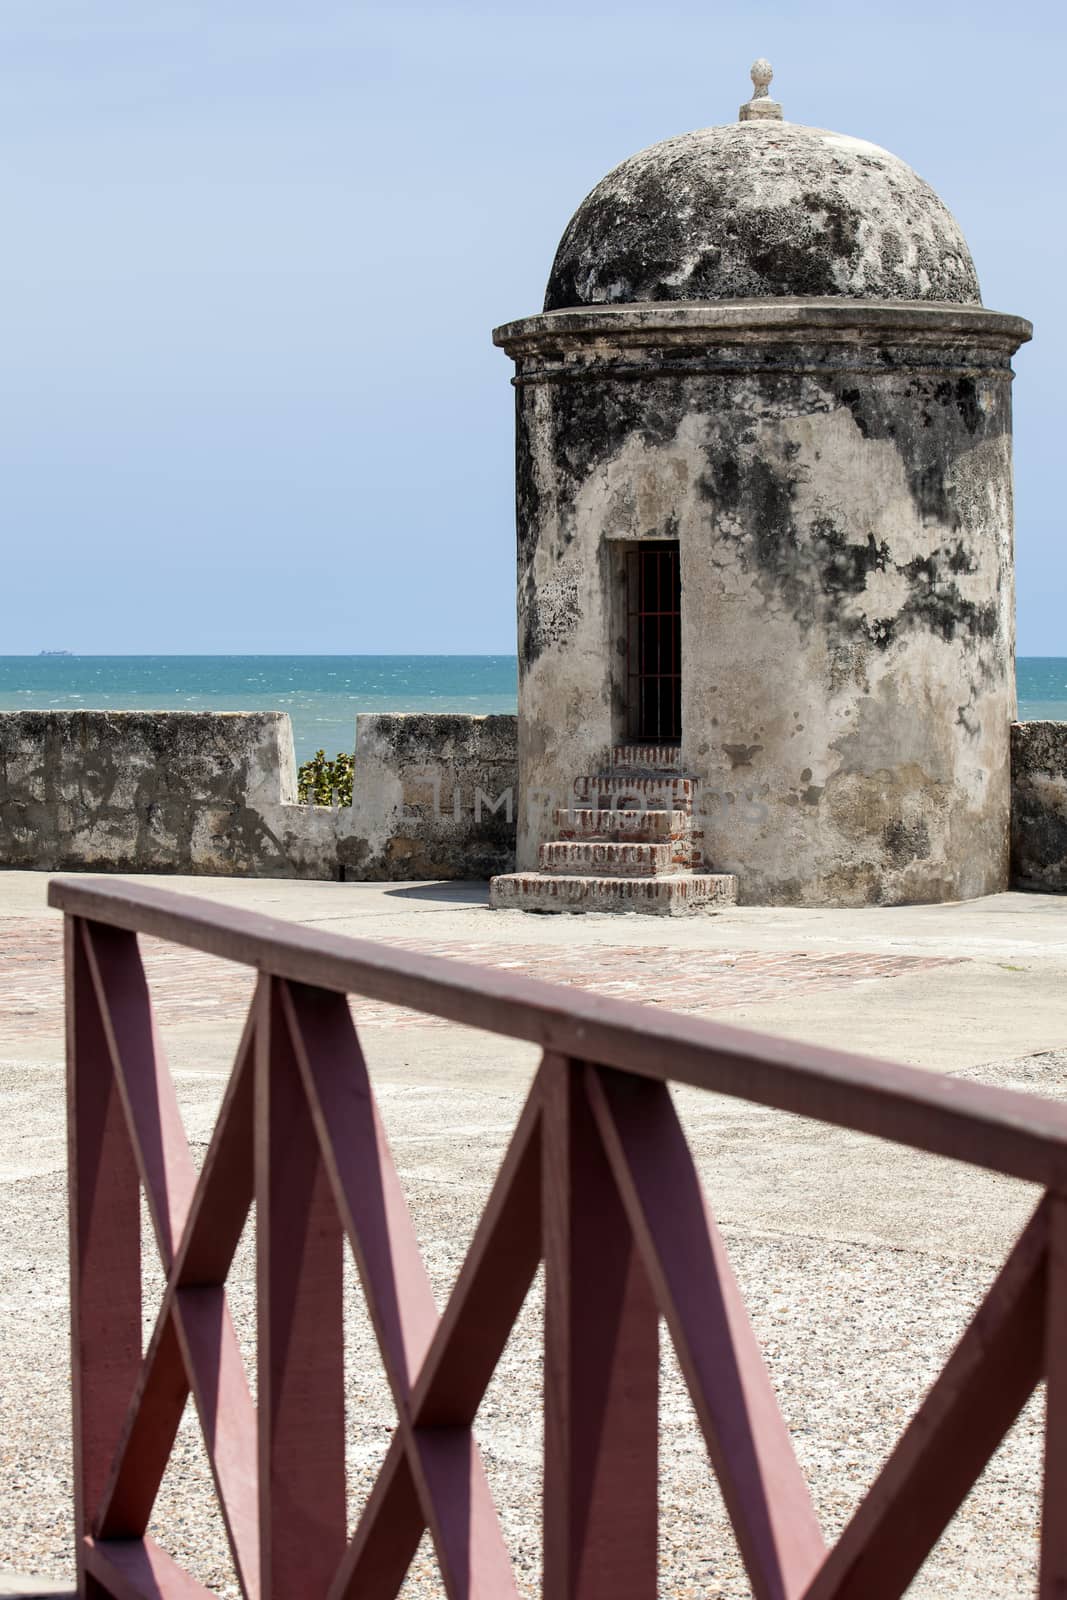 Bartizan of Cartagena's wall